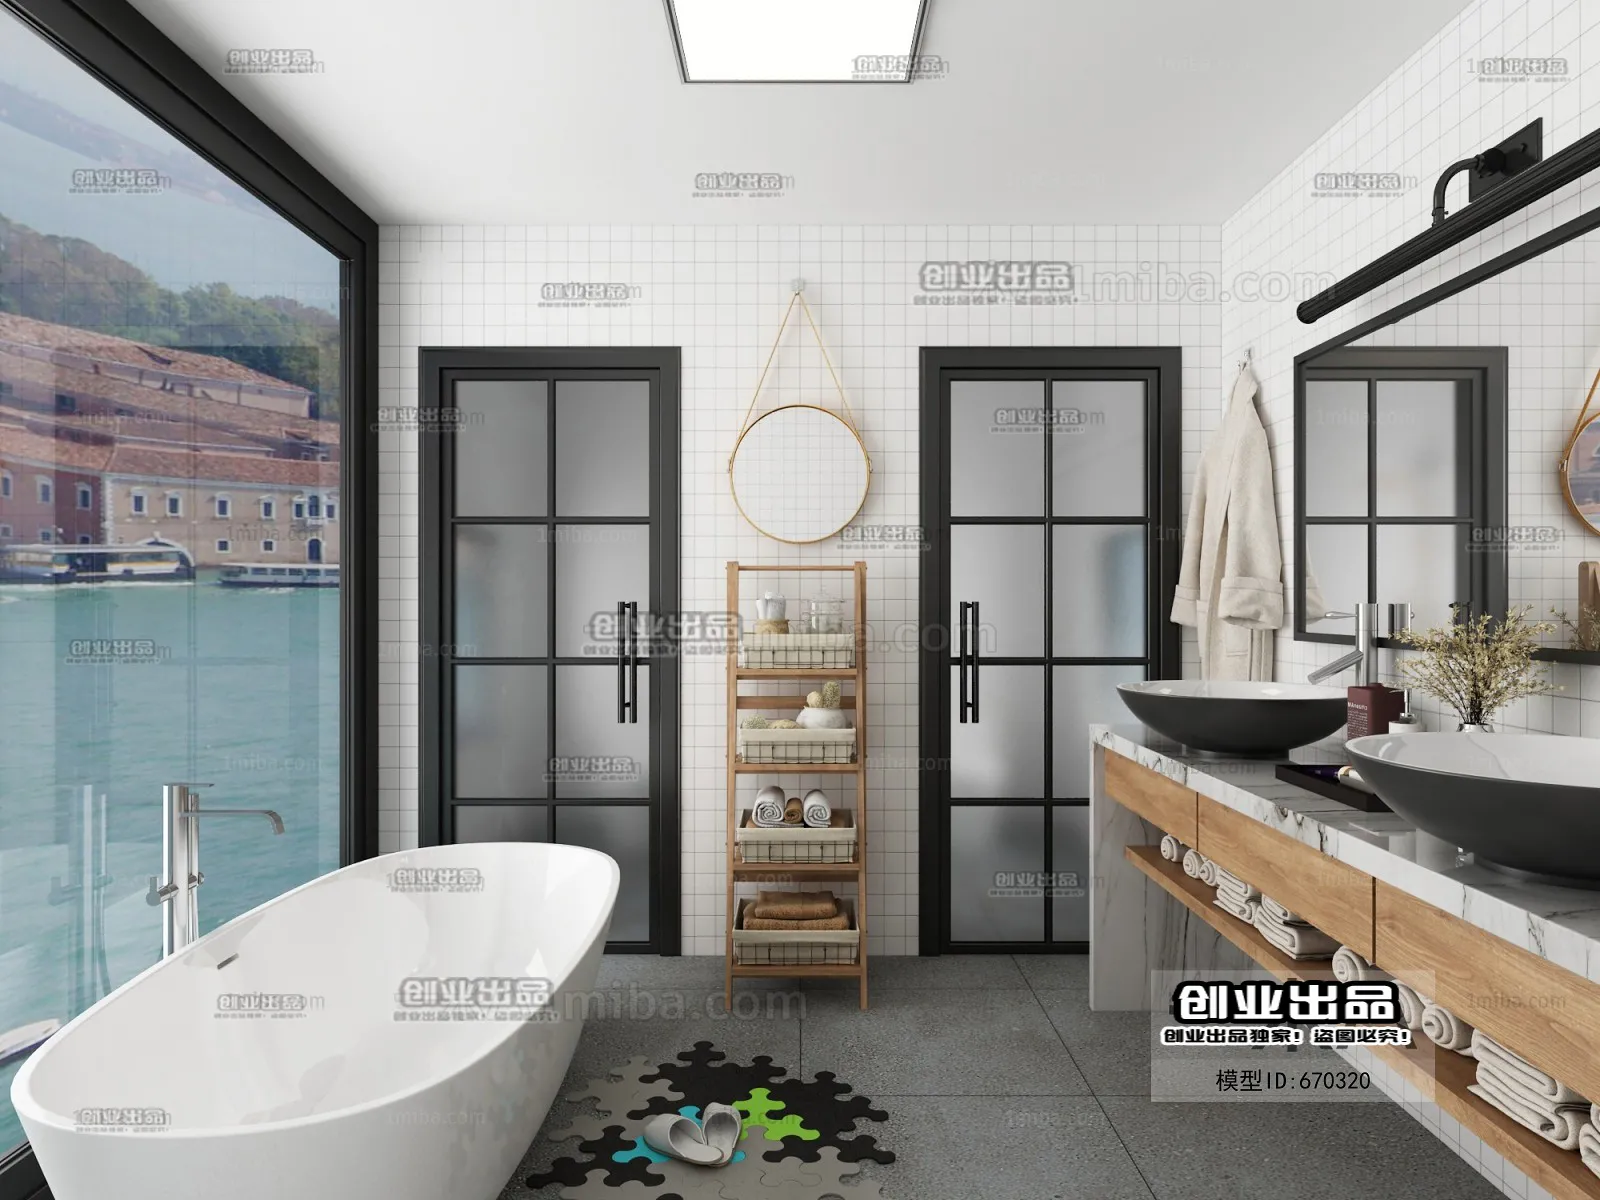 Bathroom – Scandinavian architecture – 011